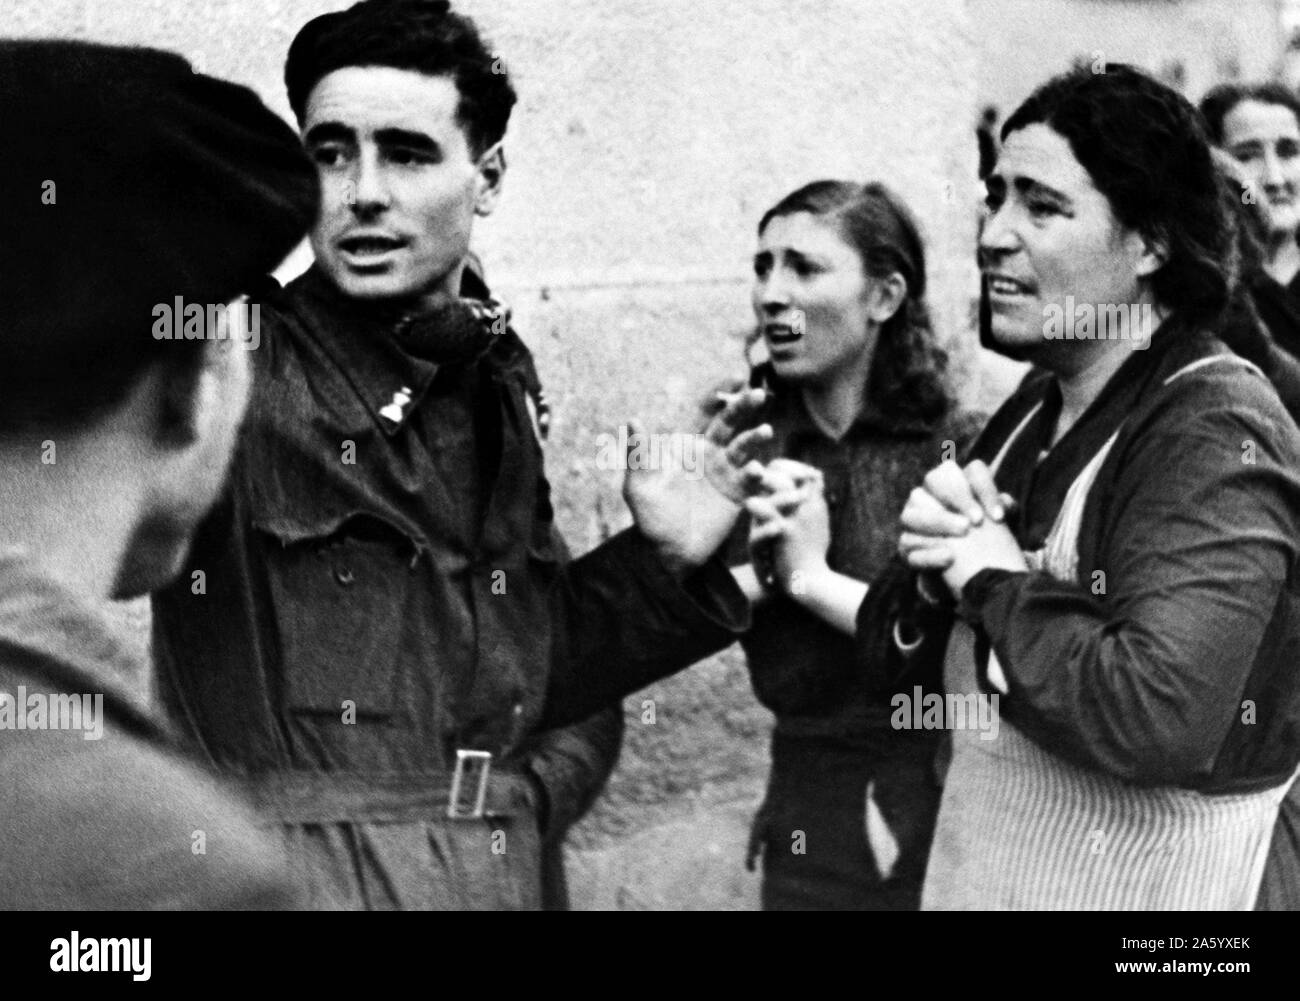 Photo de la famille de ceux qui sont prisonniers au cours d'une attaque aérienne à Madrid. Datée 1941 Banque D'Images